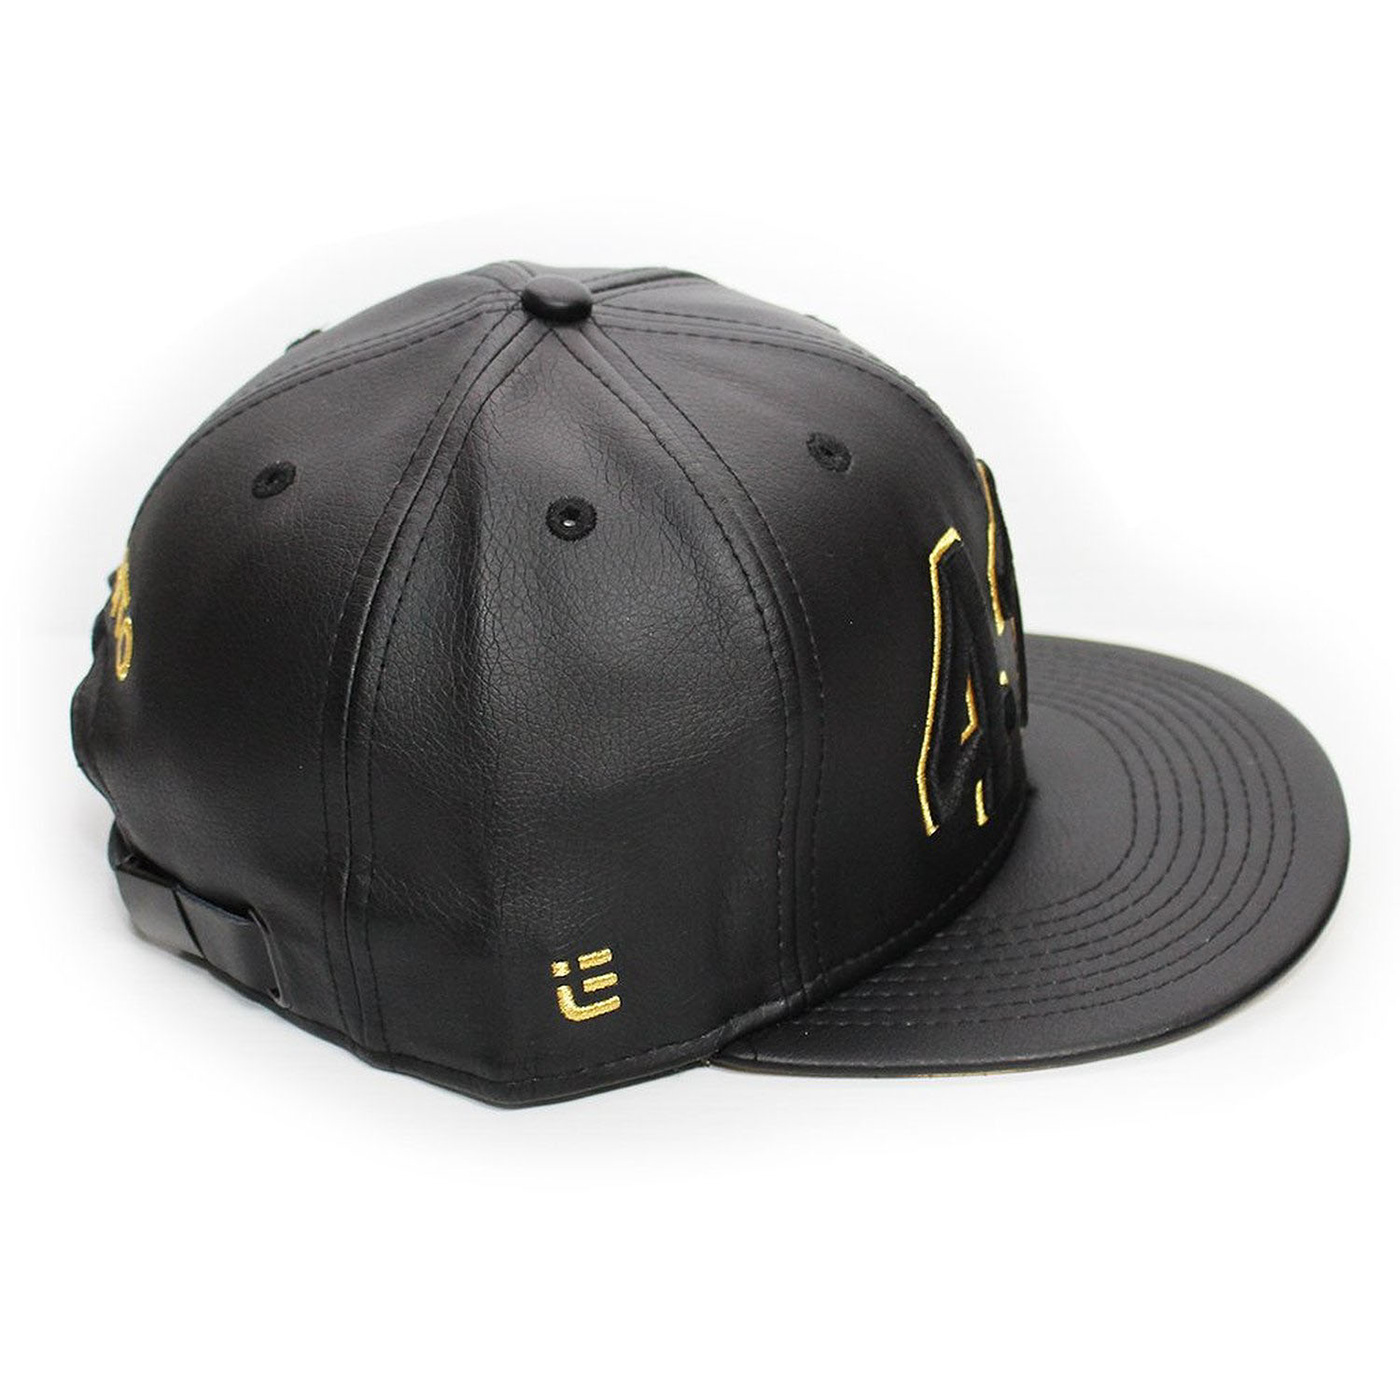 hat design cap apparel graphic print